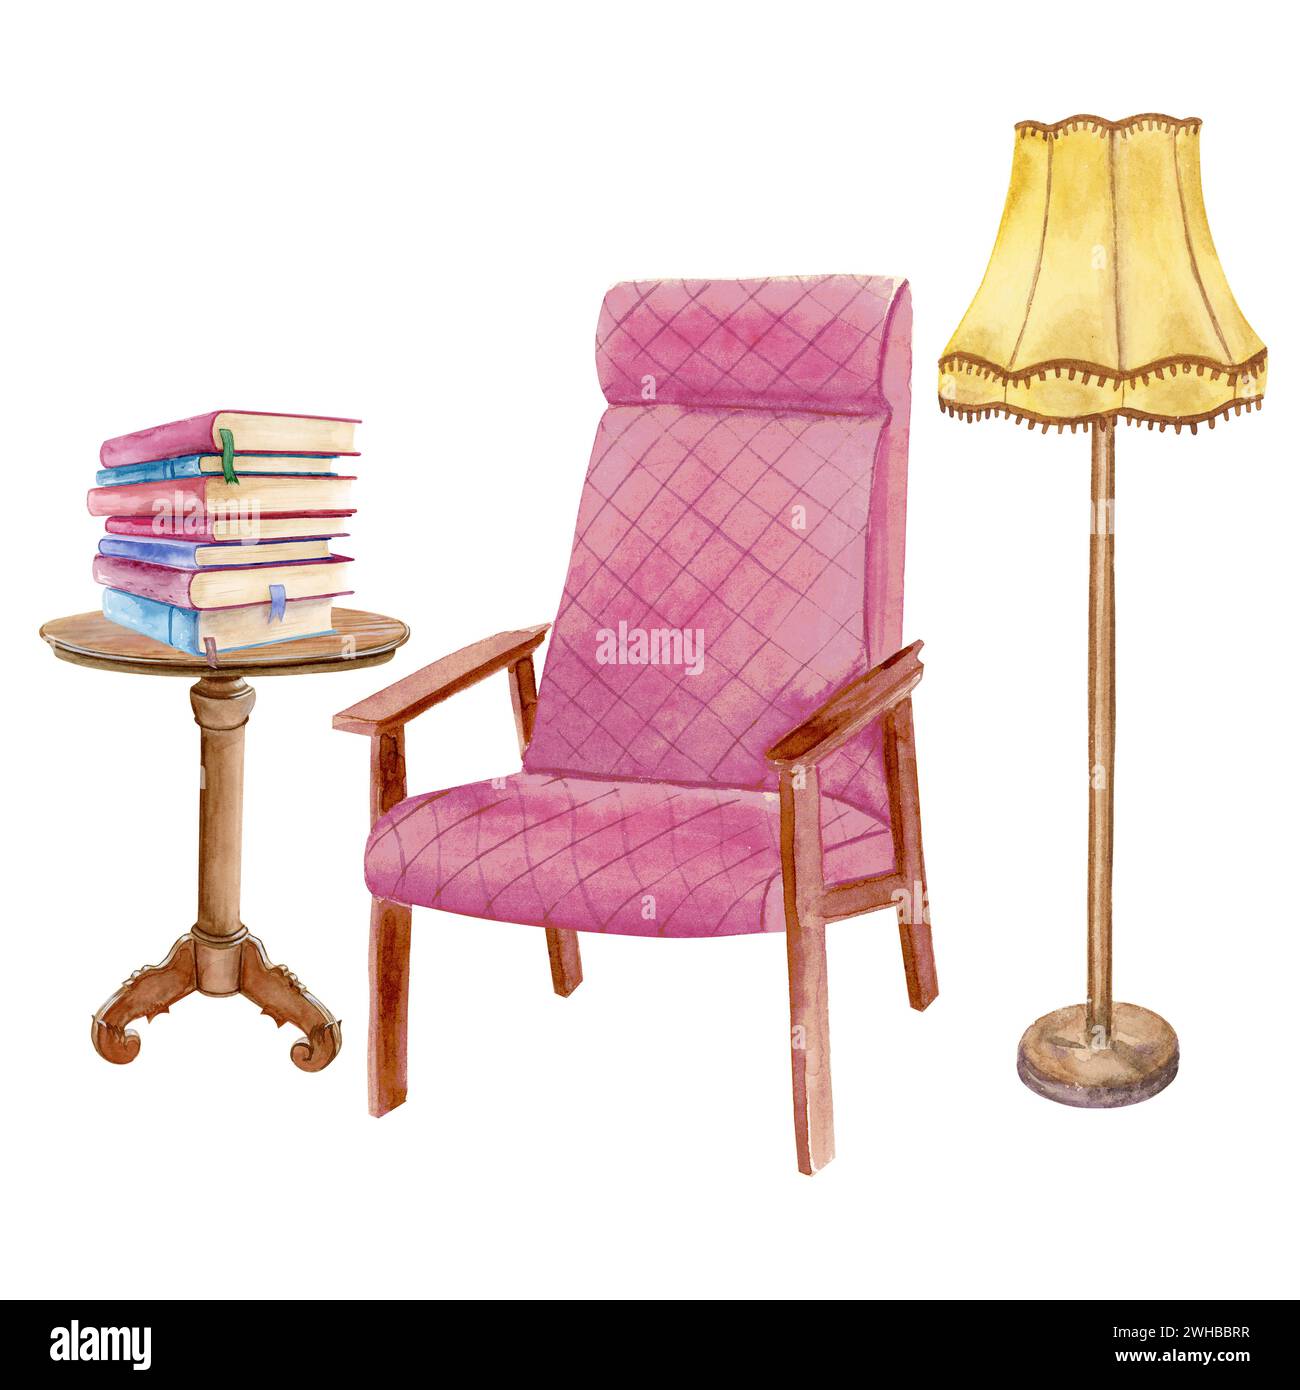 Composizione acquerello di una sedia rosa tenue, piccolo tavolo da libro con una pila di libri e una piantana gialla Foto Stock